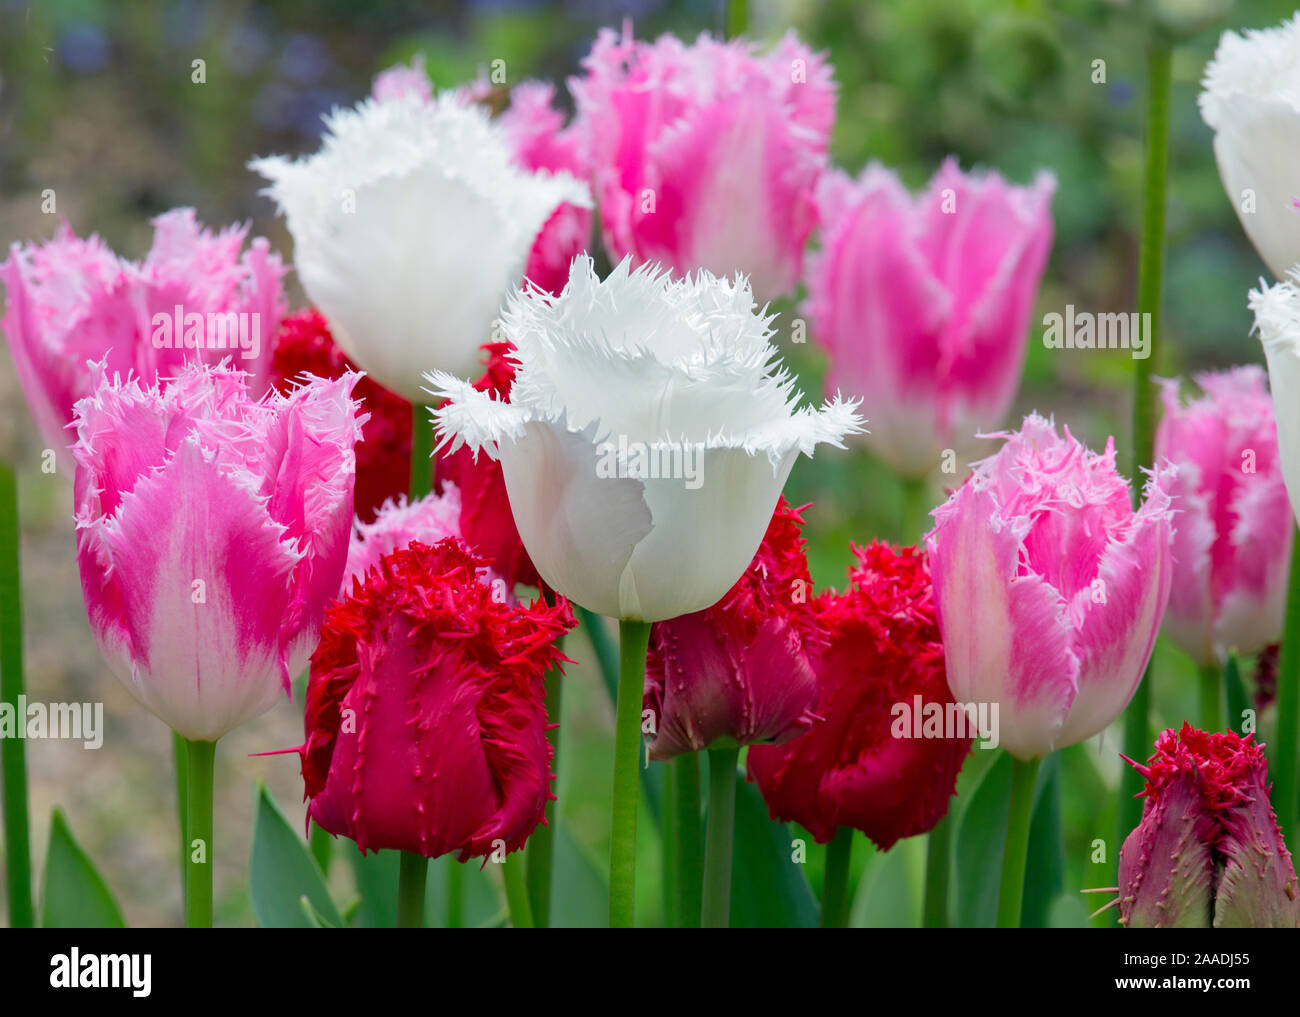 Orlata Tulip 'Dallas' (rosa) e Tulipa "Ali wan' (bianca) e Tulipa "Valery Gergiev' (rosso) cresce in giardino confine. Inghilterra, Regno Unito. Foto Stock